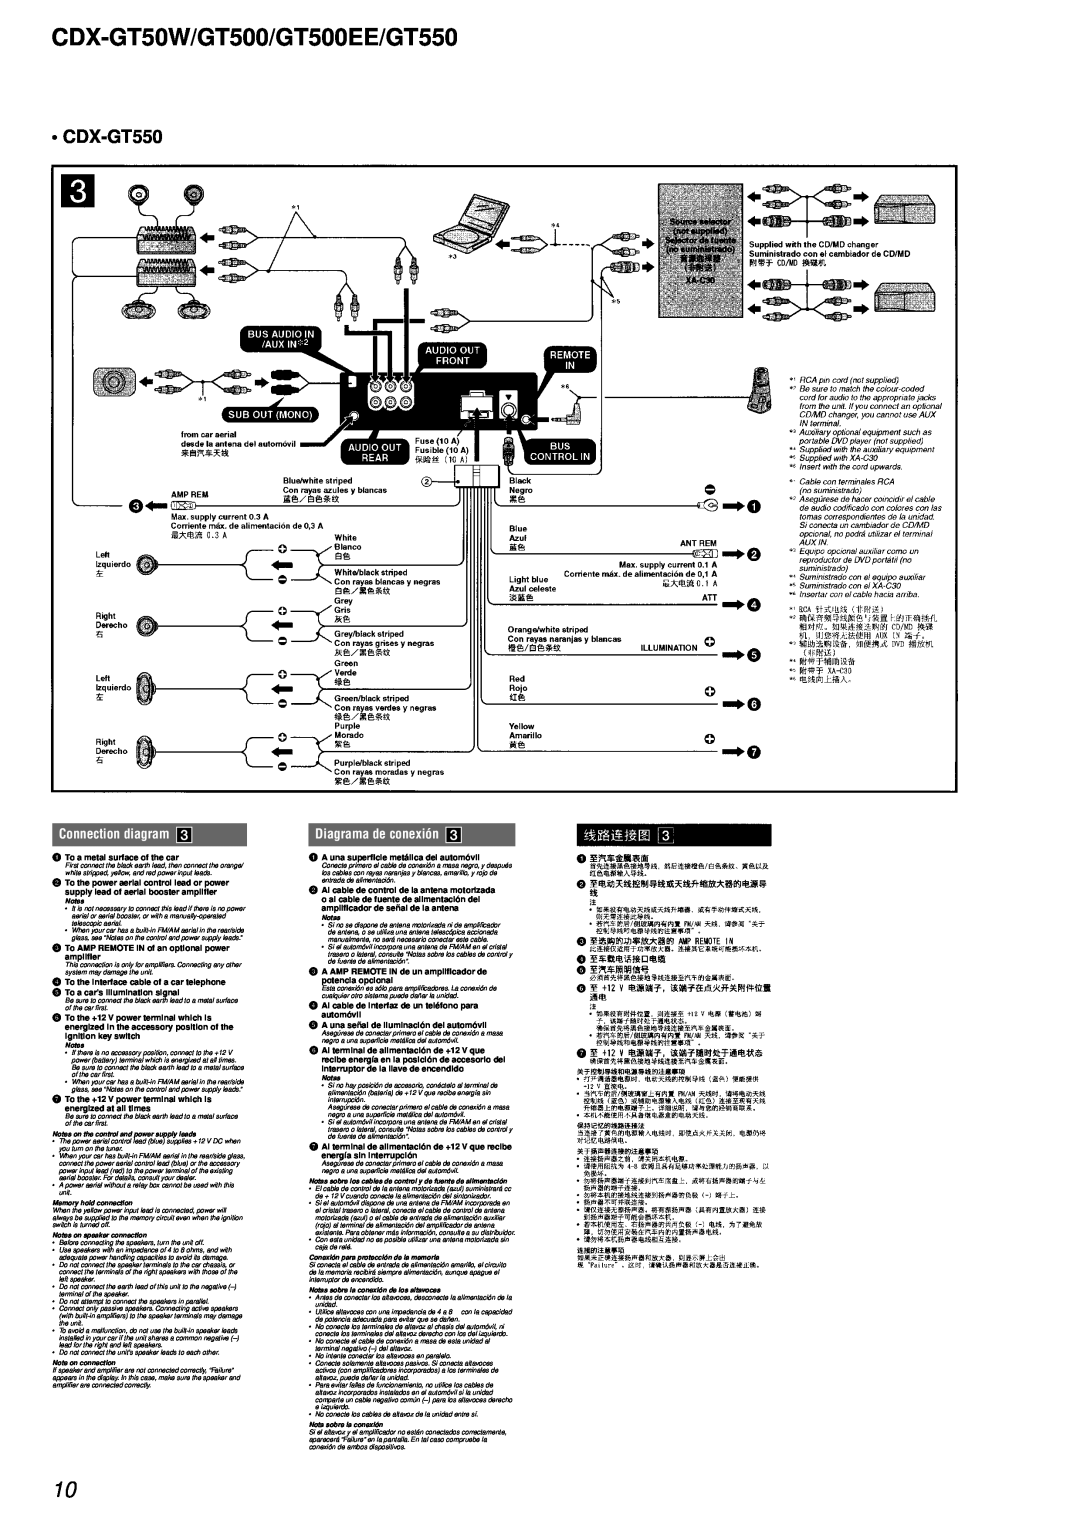 Sony CDX-GT500EE service manual CDX-GT50W/GT500/GT500EE/GT550, • CDX-GT550, Connection diagram, Diagrama de conexión 